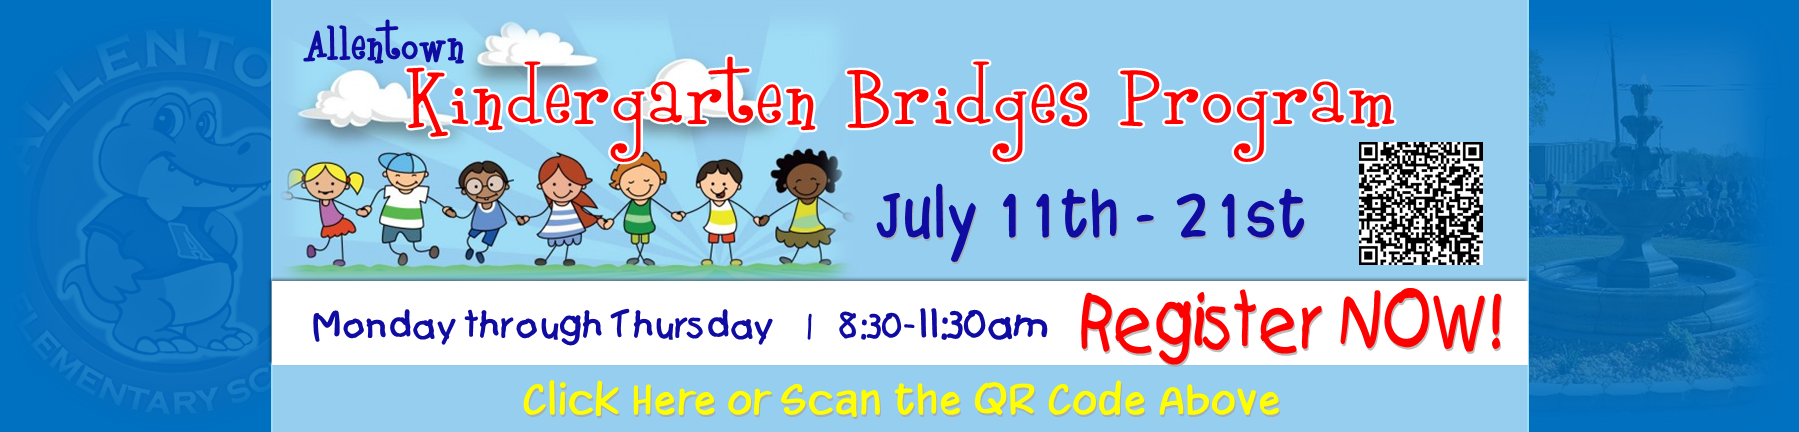 Kindergarten Bridges Registration